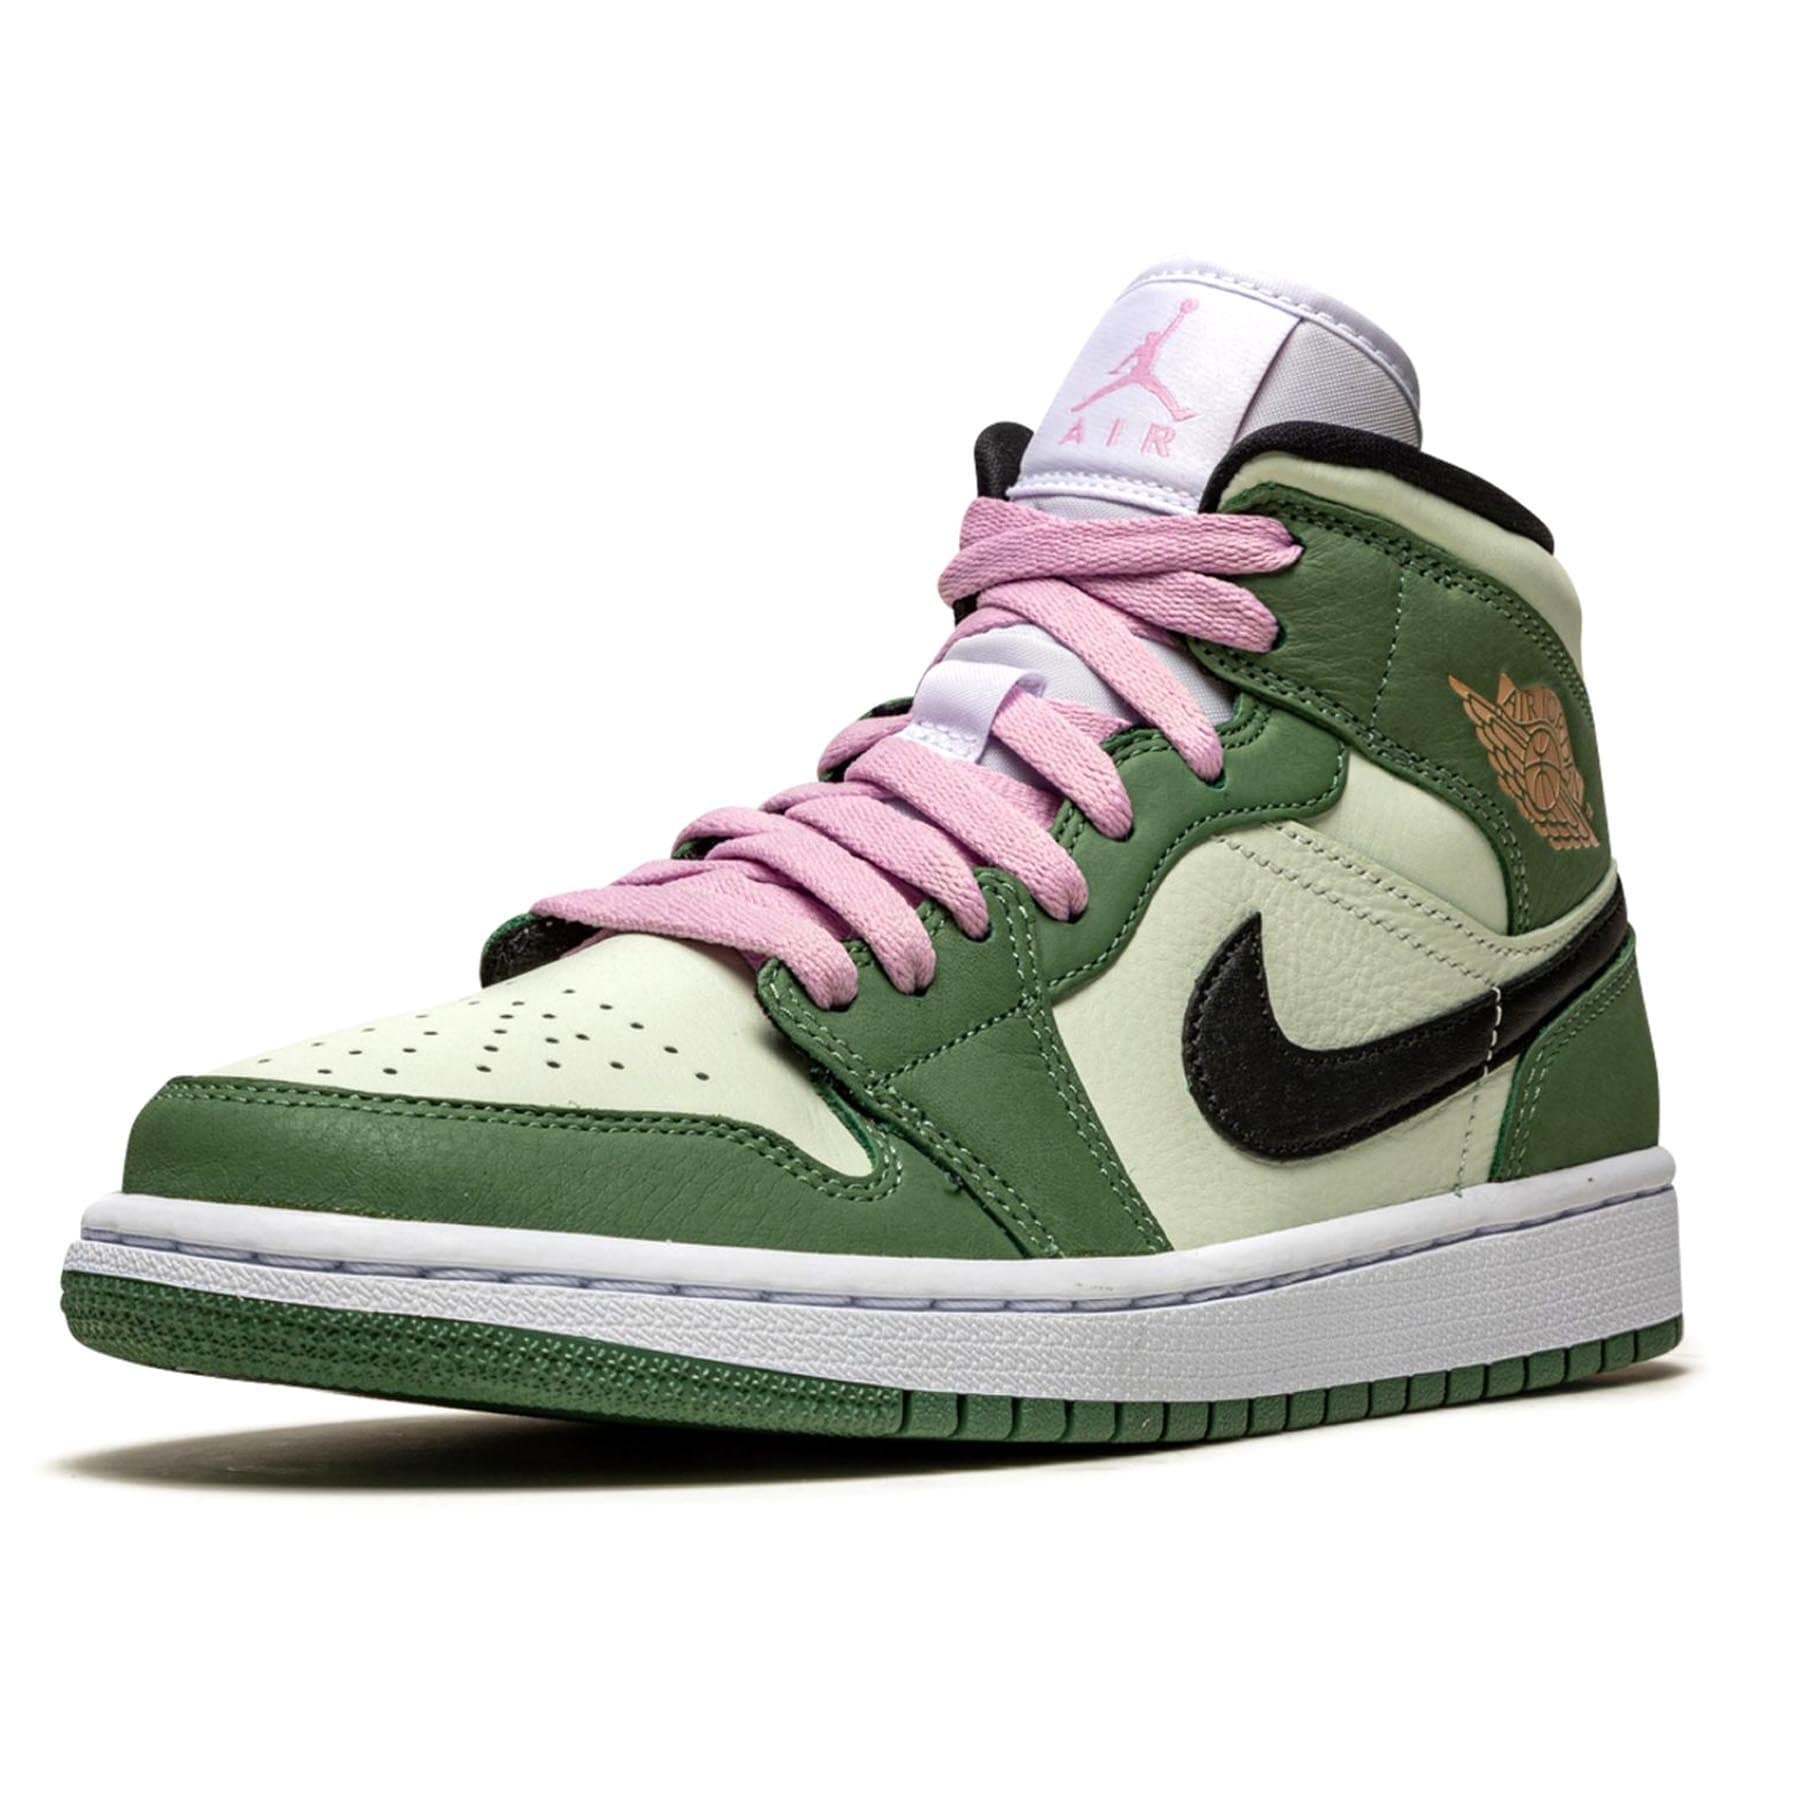 green pink laces jordans